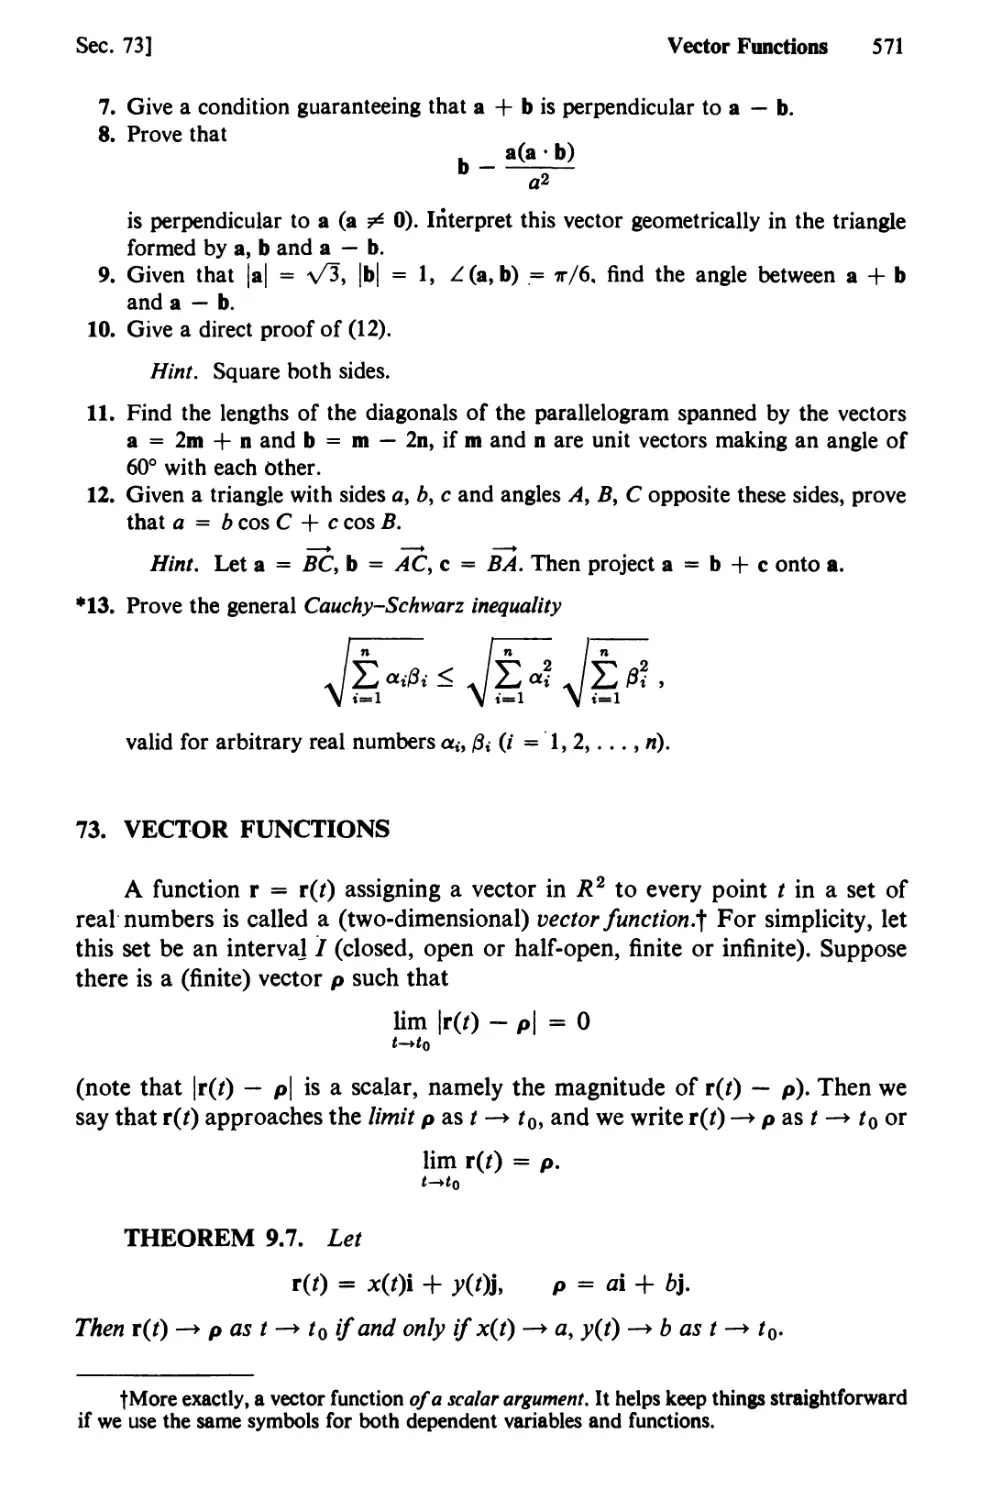 73. Vector Functions